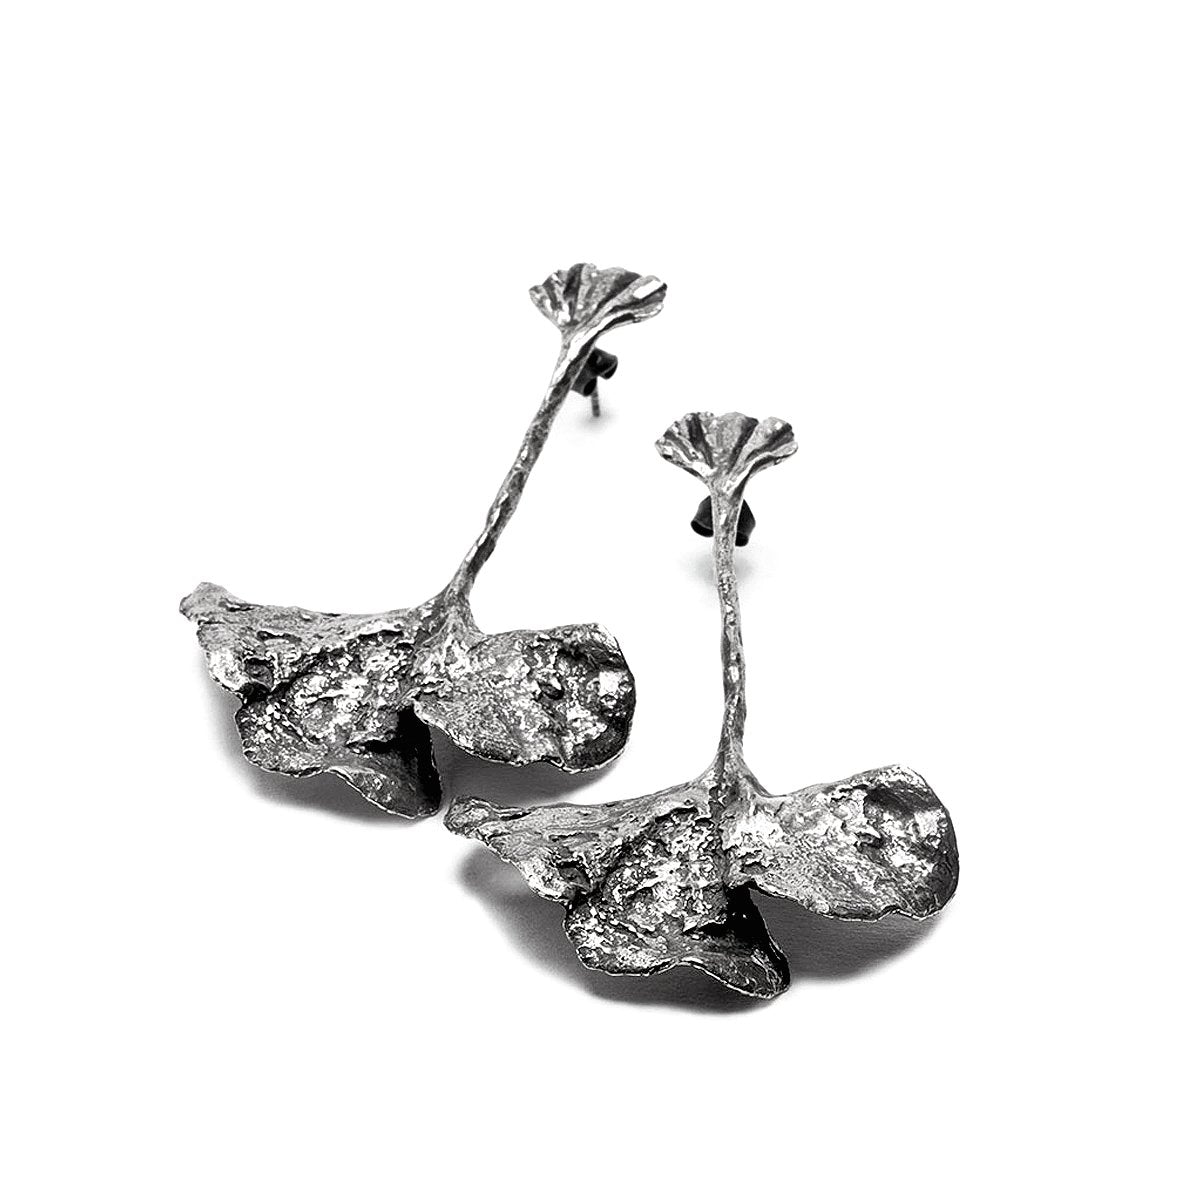 The fan earrings - oxidized Silver